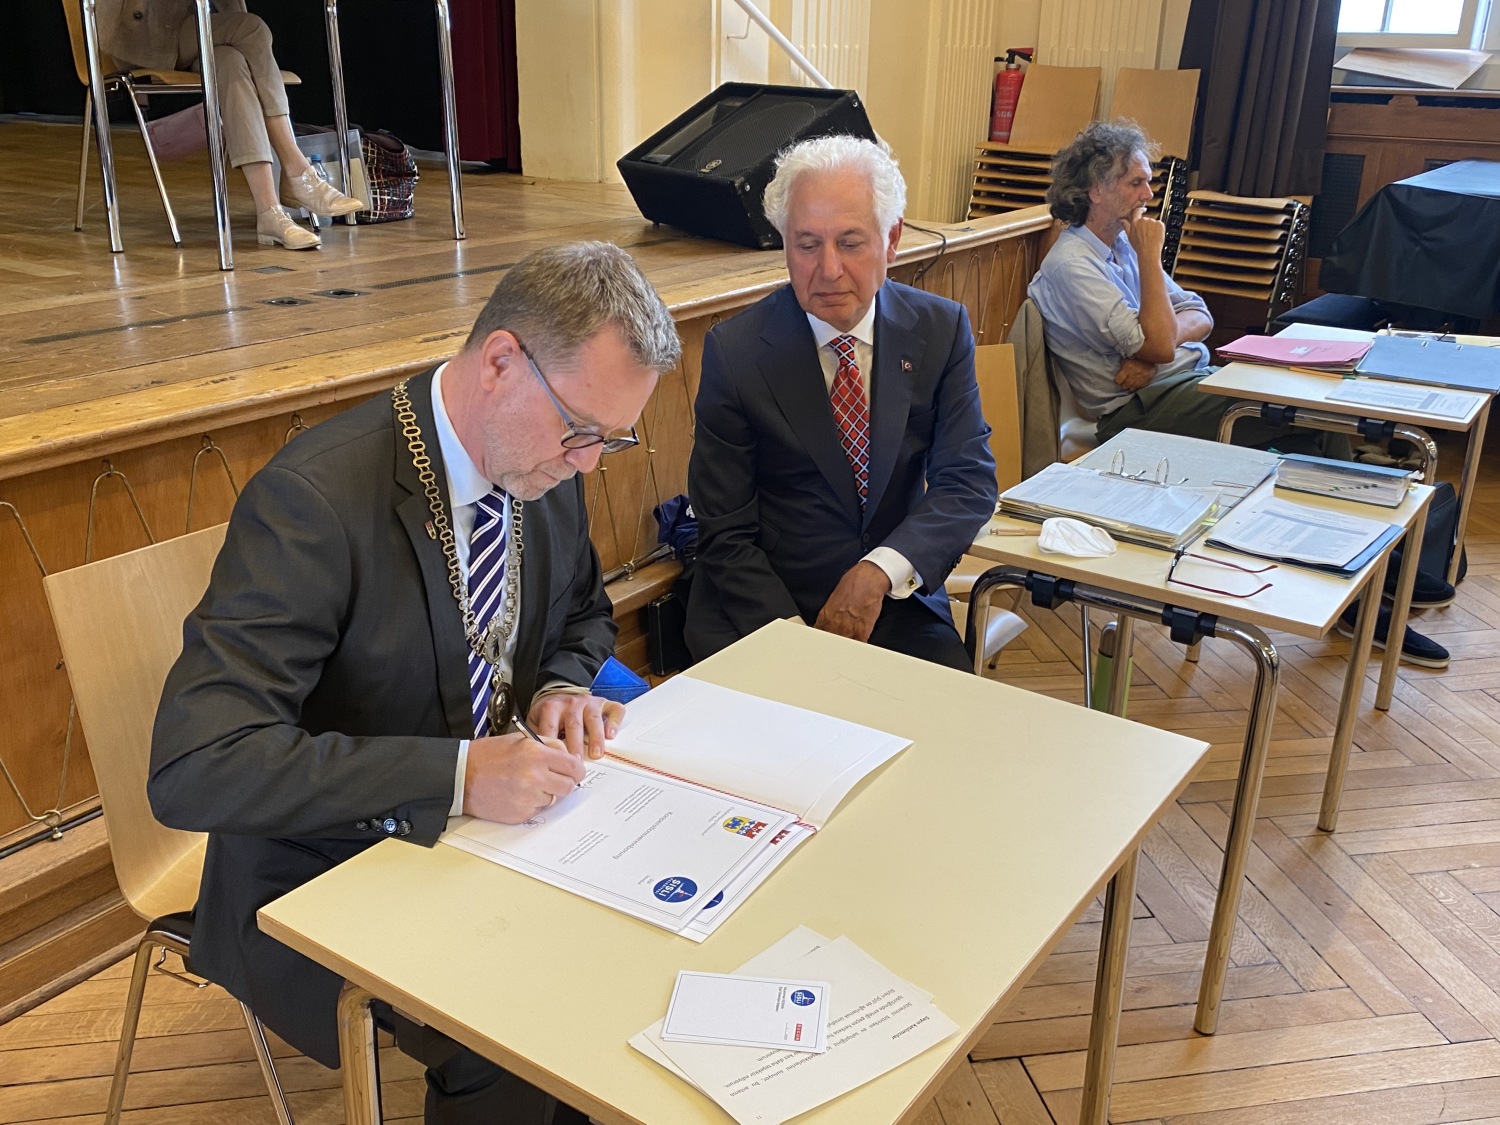 Bezirksbürgermeister Reinhard Naumann unterzeichnet die Kooperationsvereinbarung im Rahmen der Bezirksverordnetenversammlung am 19. August 2021